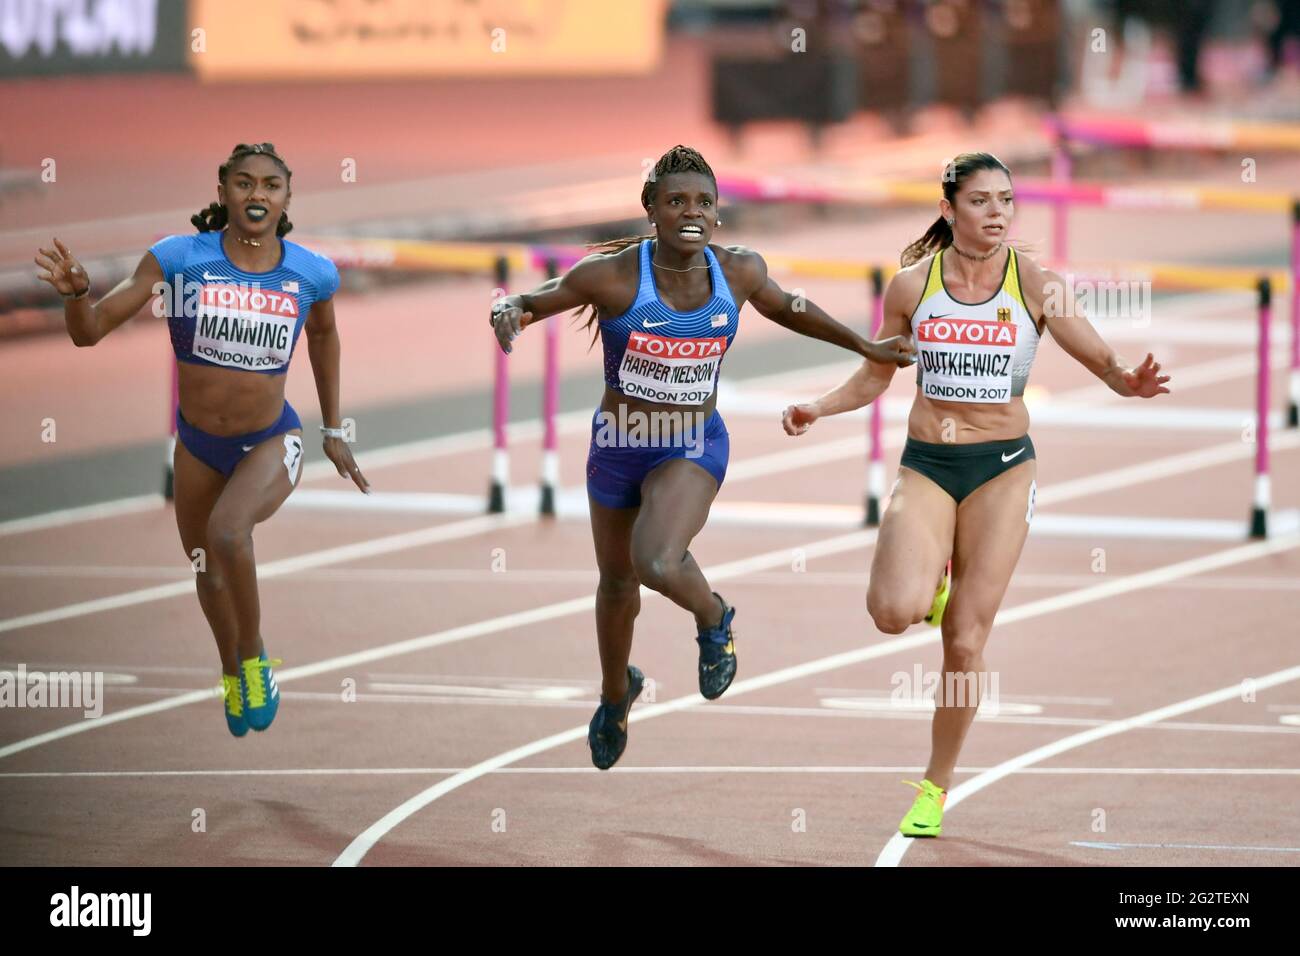 Dawn Harper-Nelson (USA, argent), Pamela Dutkiewicz (GER, Bronze). 100 mètres haies femmes. Finale. Championnats du monde d'athlétisme de l'IAAF, Londres 2017 Banque D'Images